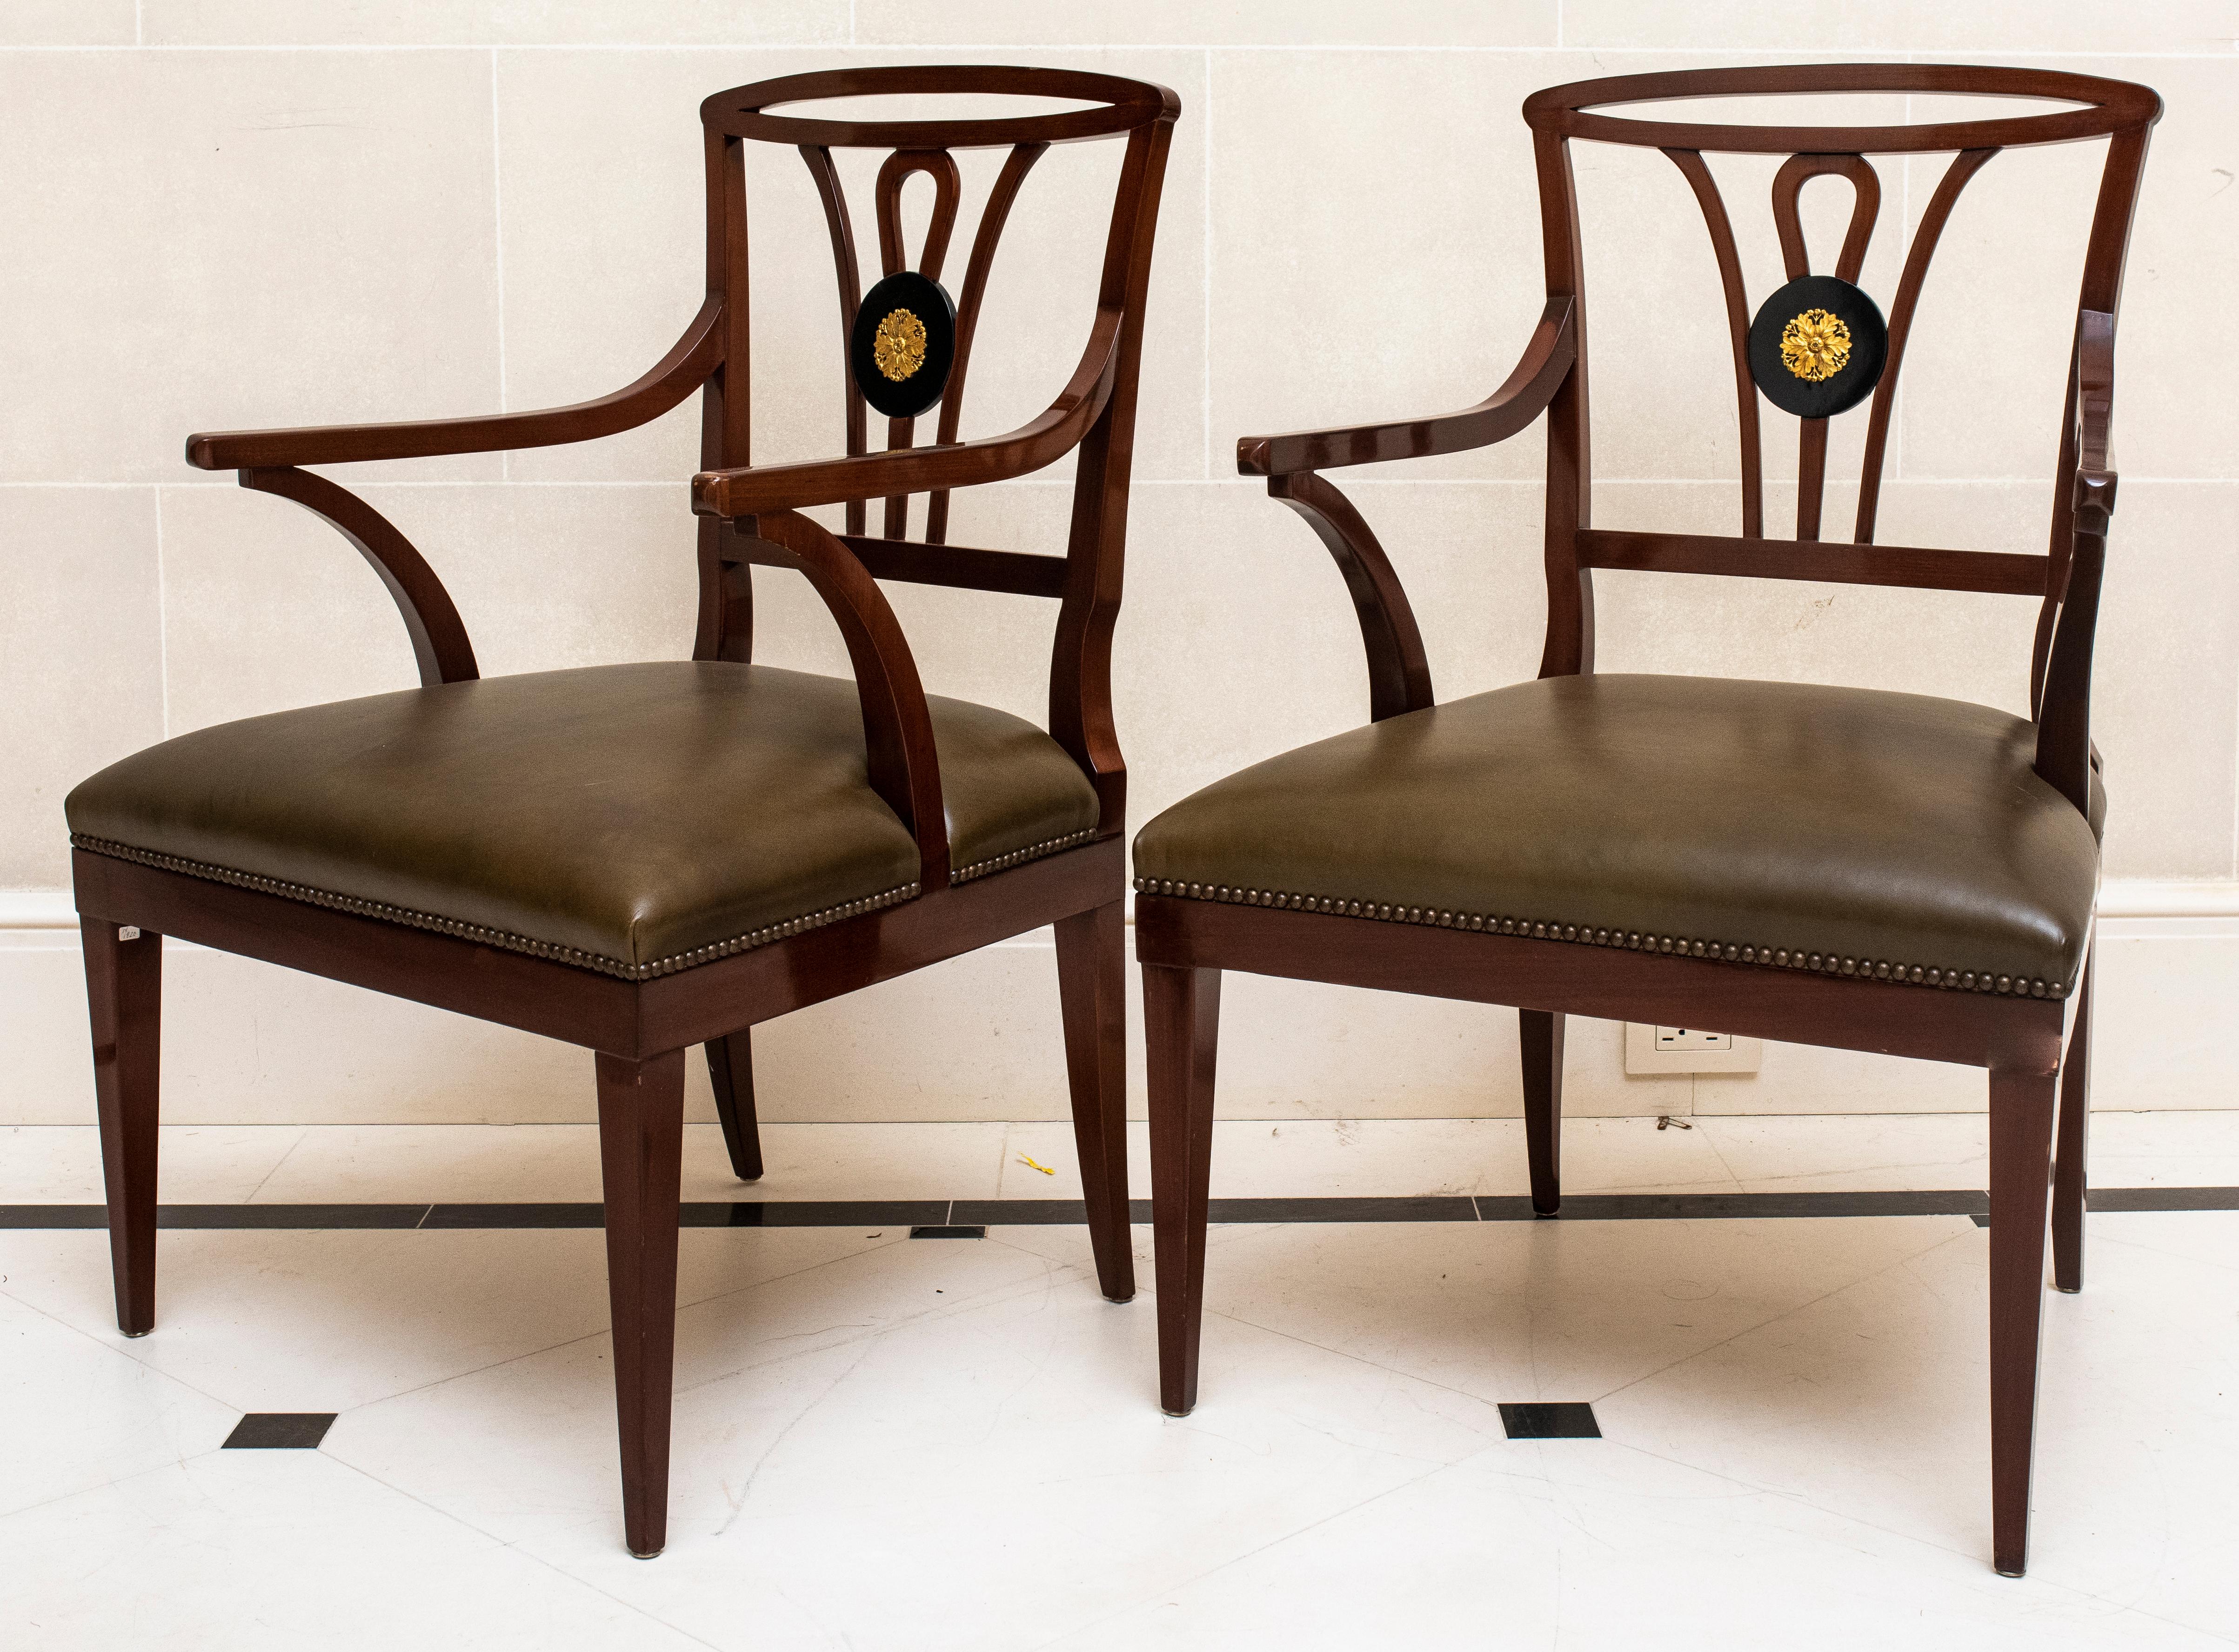 Queen Anne Revival Paar geschnitzte Holzsessel mit ledergepolstertem Sitz und ebonisierter runder Medaillon-Rückeneinlage mit Ormolu-Rosette. 

Händler: S138XX